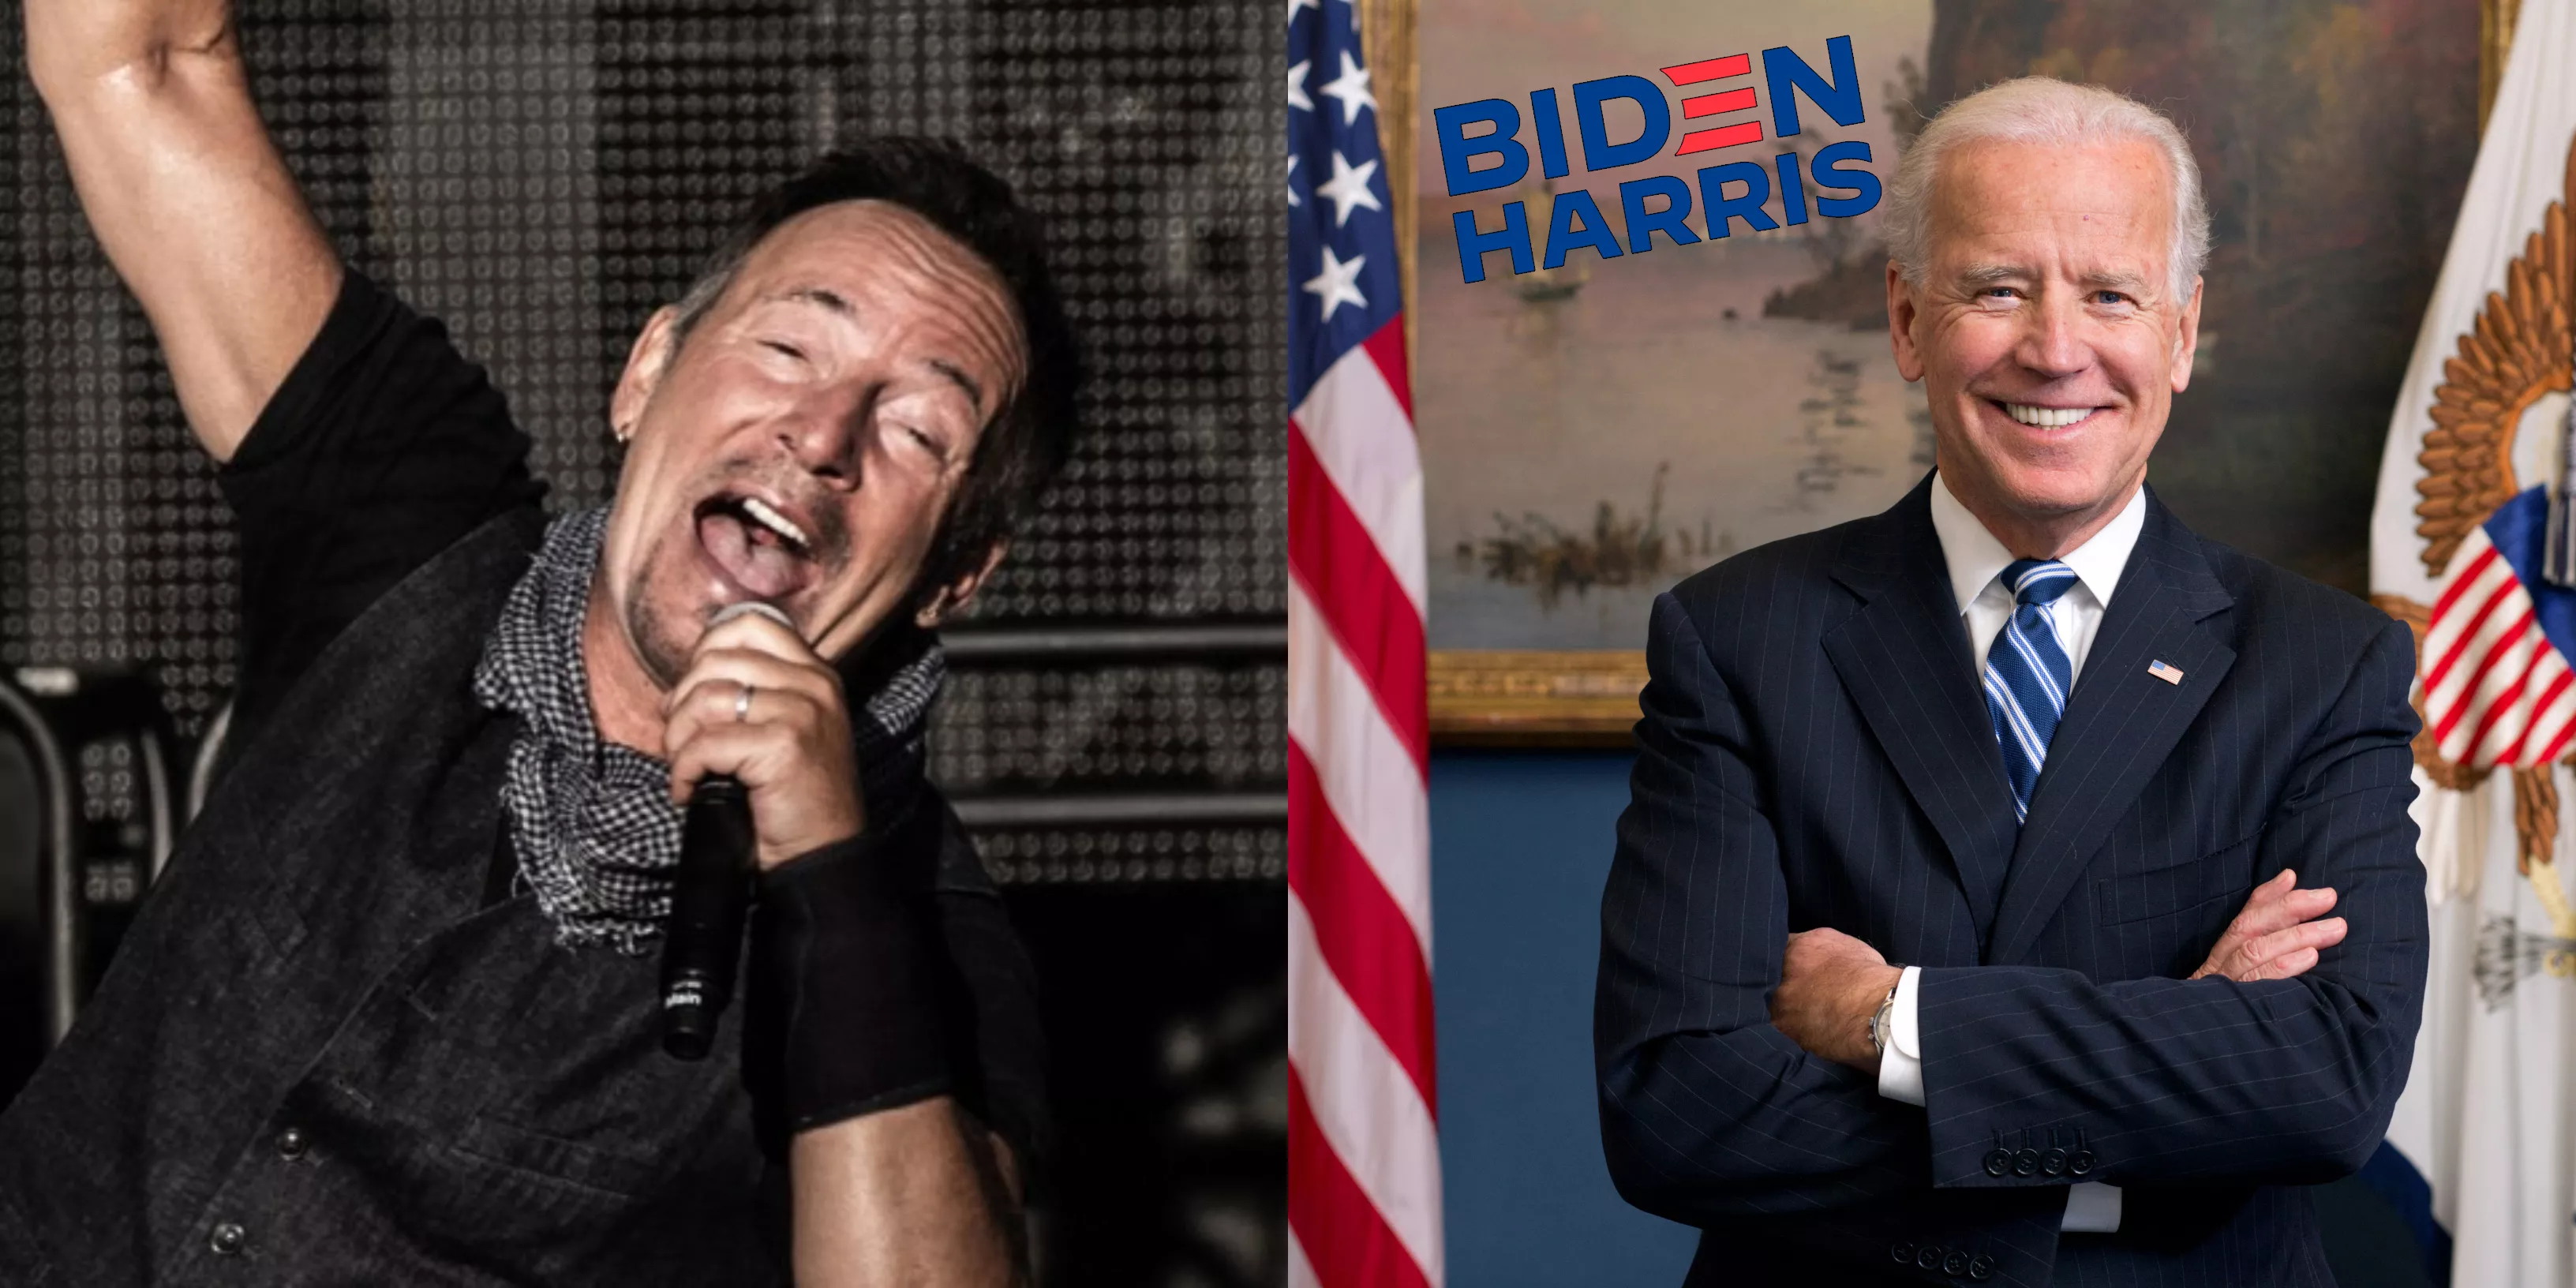 VIDEO: Springsteen udlåner sin stemme og musik til kampagne